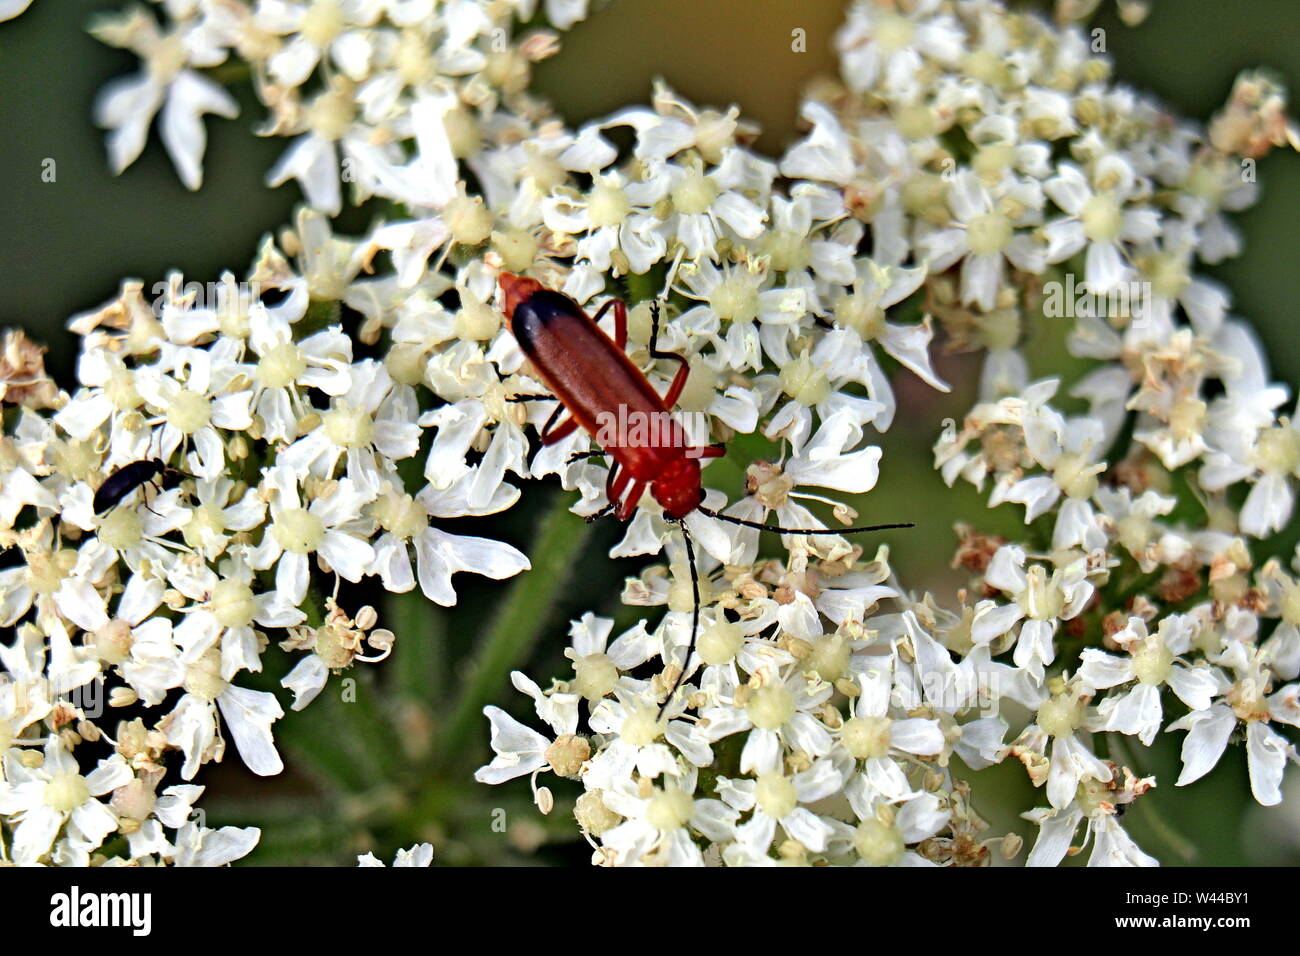 Gemeinsame rot Soldat Käfer, Rhagonycha fulva, auch irreführenderweise als Blutsauger Käfer bekannt und populär in England als scharfkraut Bonking bekannt Stockfoto